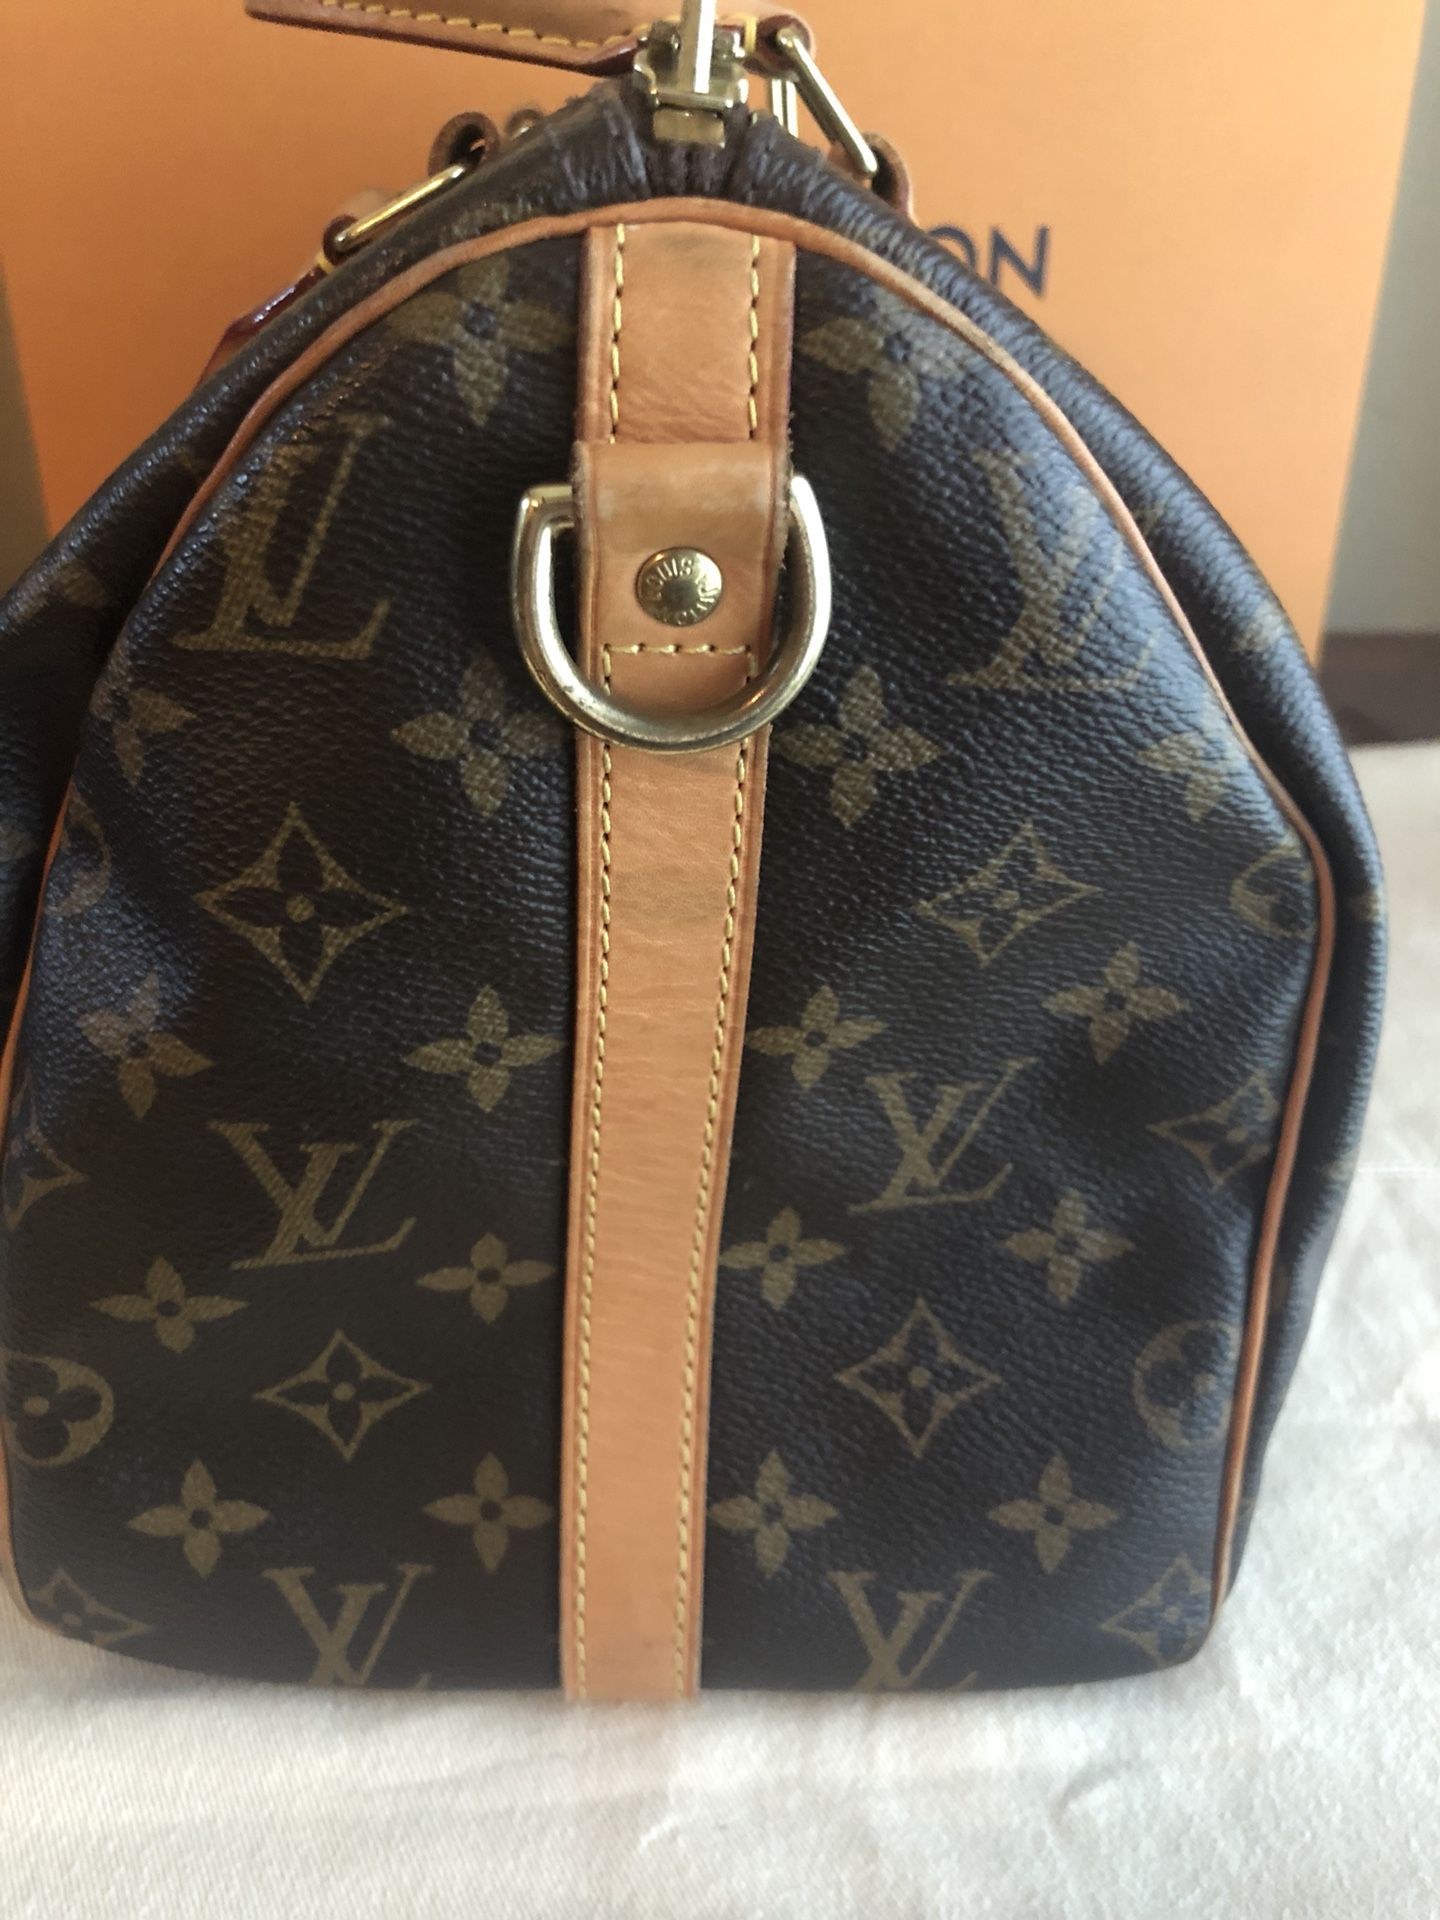 Louis Vuitton Vintage SPEEDY 30 Handbag for Sale in Fort Worth, TX - OfferUp